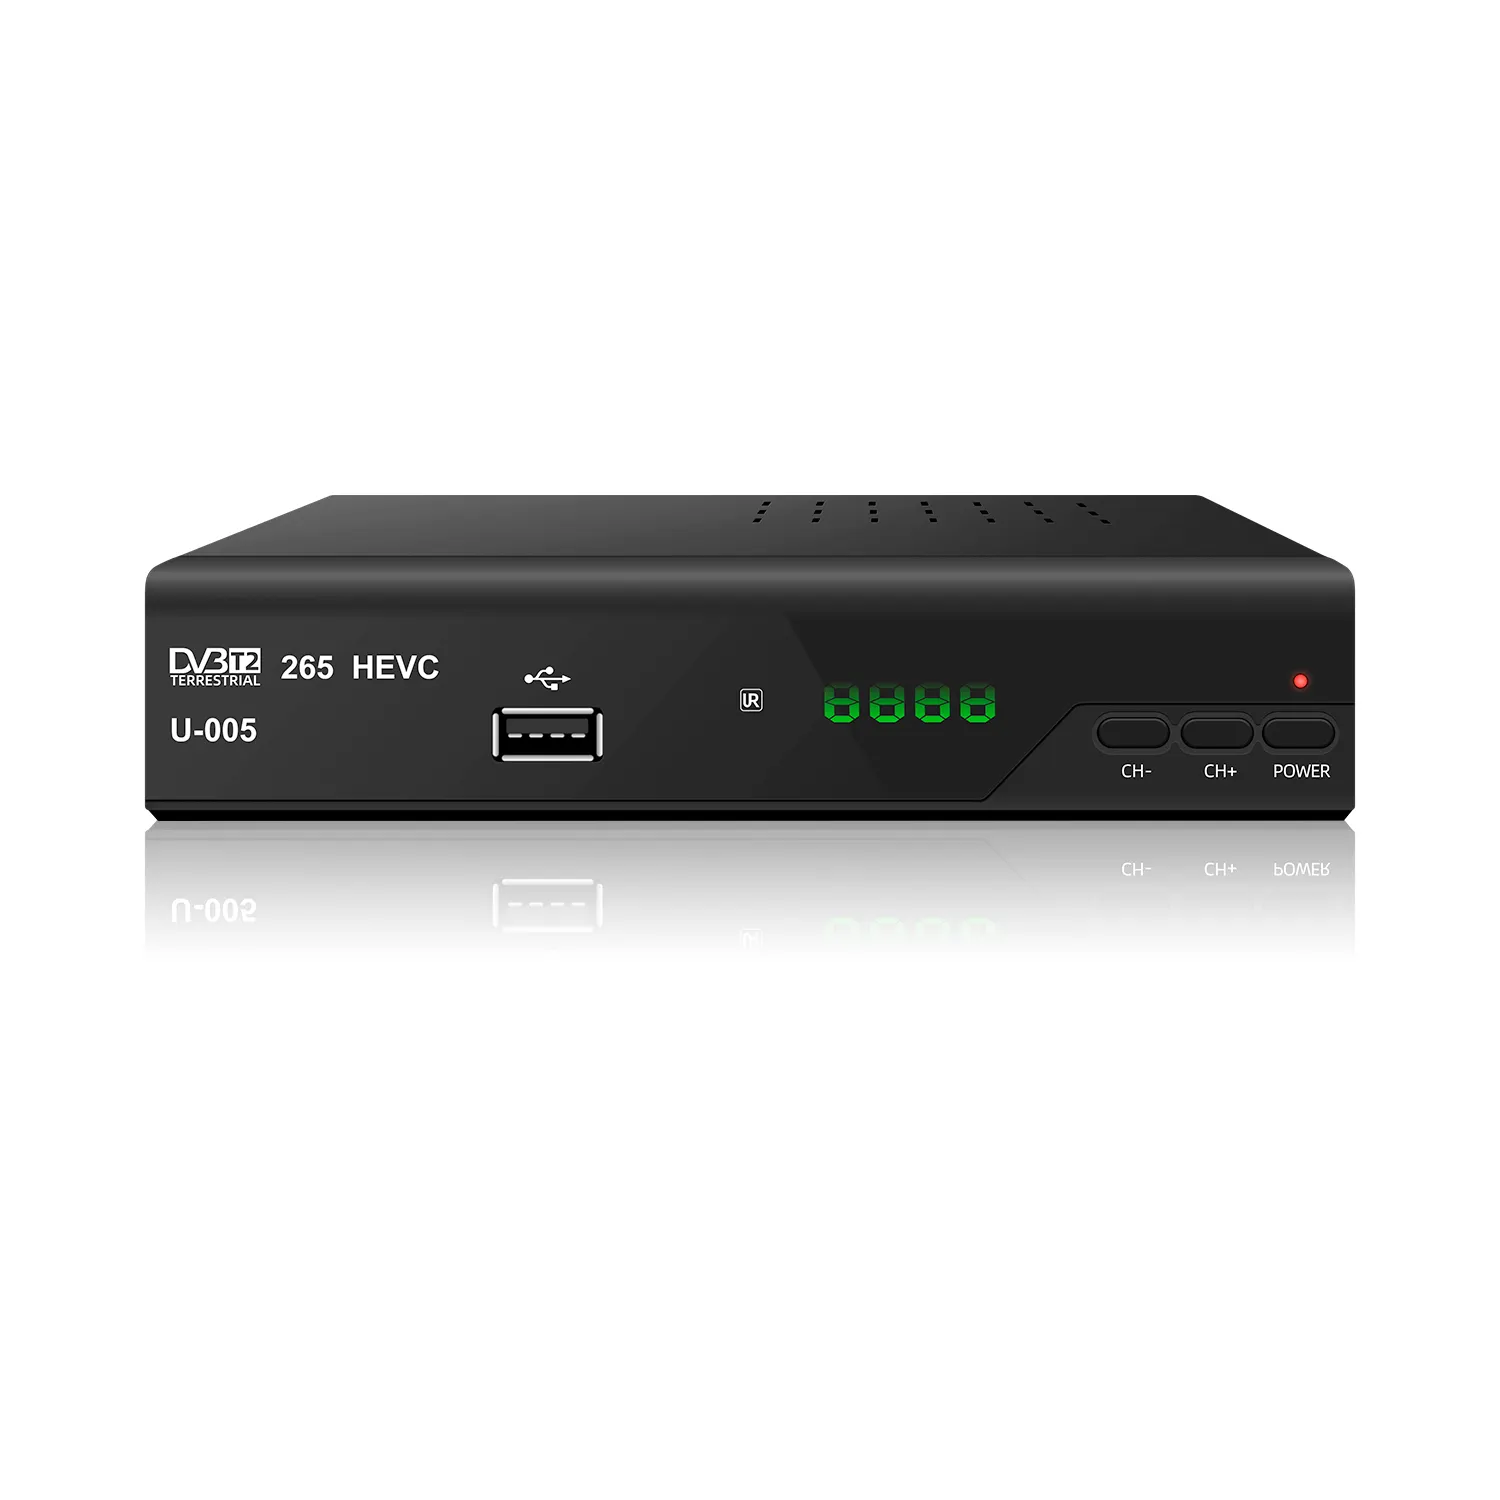 Fta hd 1080 p DVB-T2 set üstü kutusu ücretsiz hava mini tv kanalı dekoder zaman kayması medya oynatıcı dvb-t2